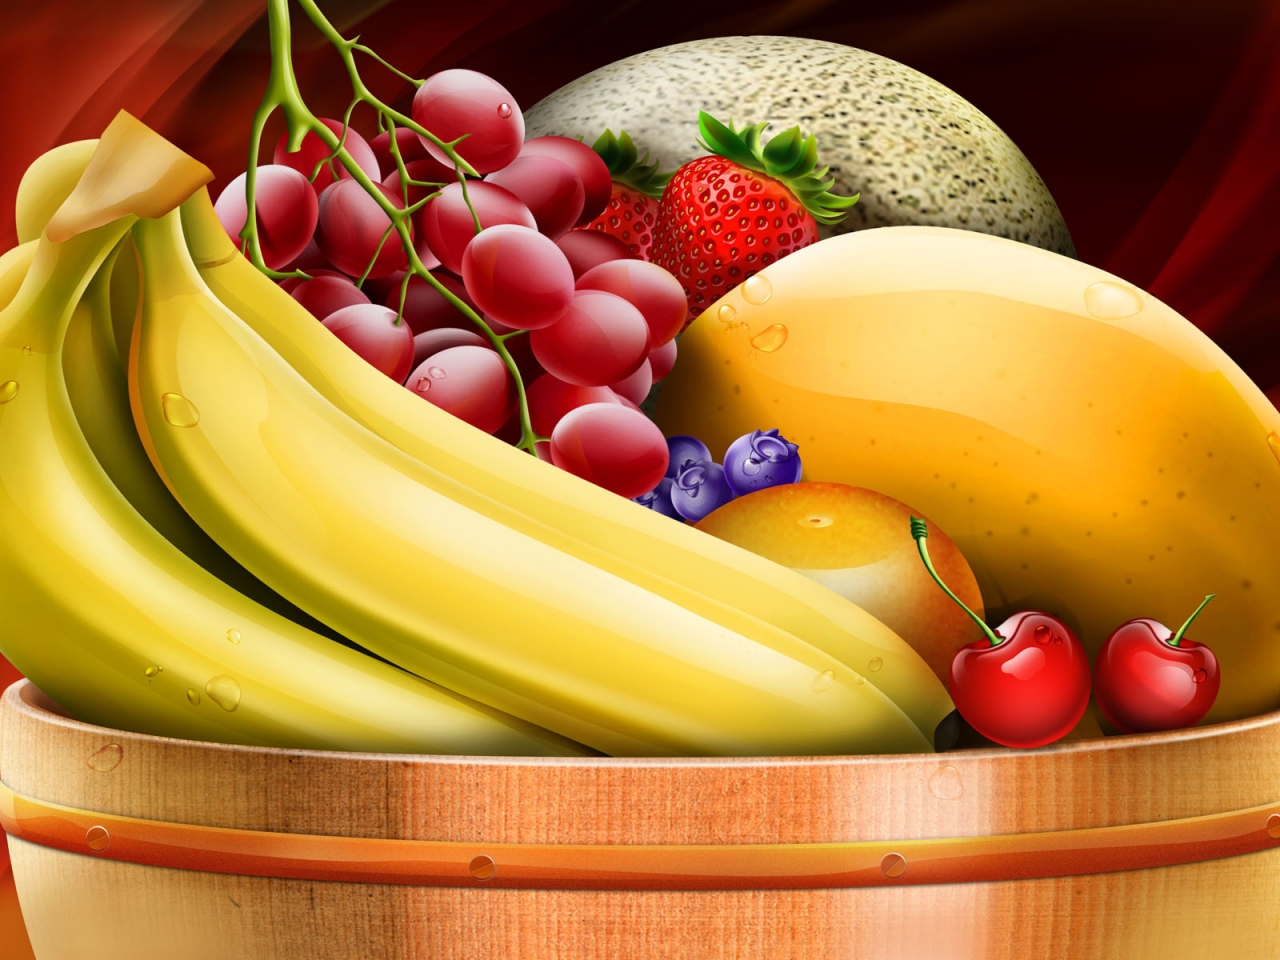 Fruit Basket for 1280 x 960 resolution